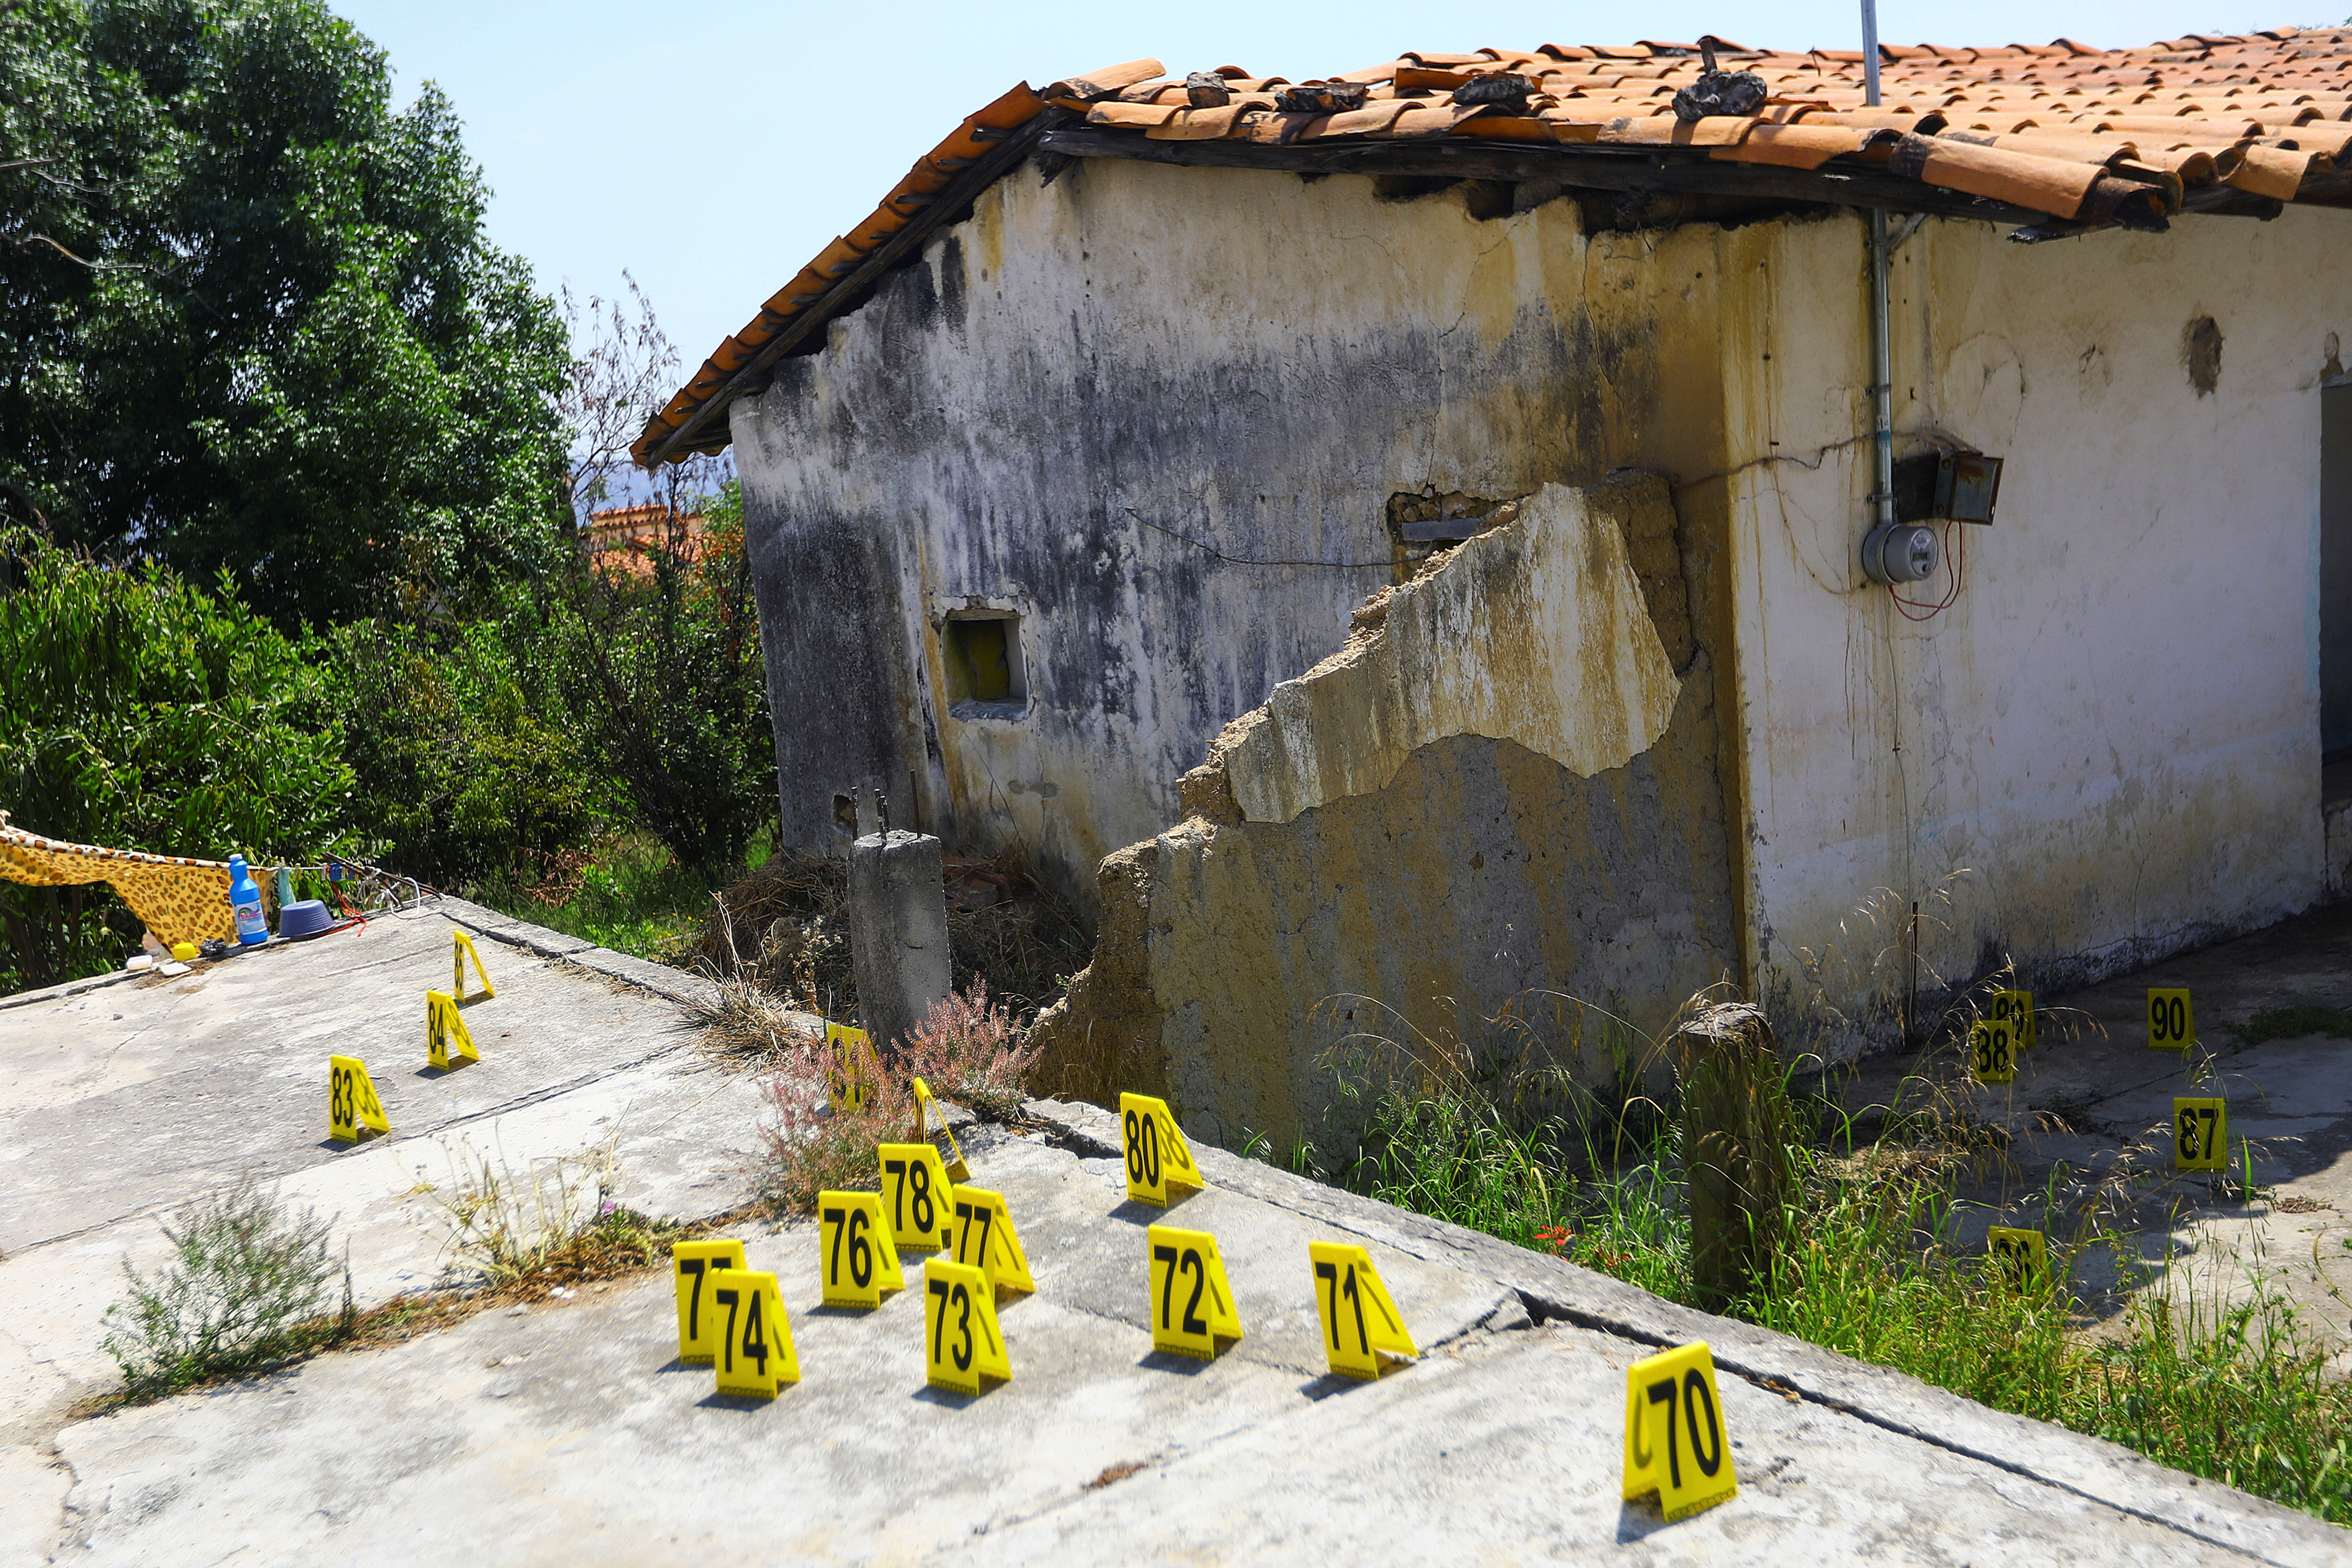 Evidencias en la escena del crimen donde fueron asesinados 13 policías (Foto: REUTERS/Edgard Garrido)